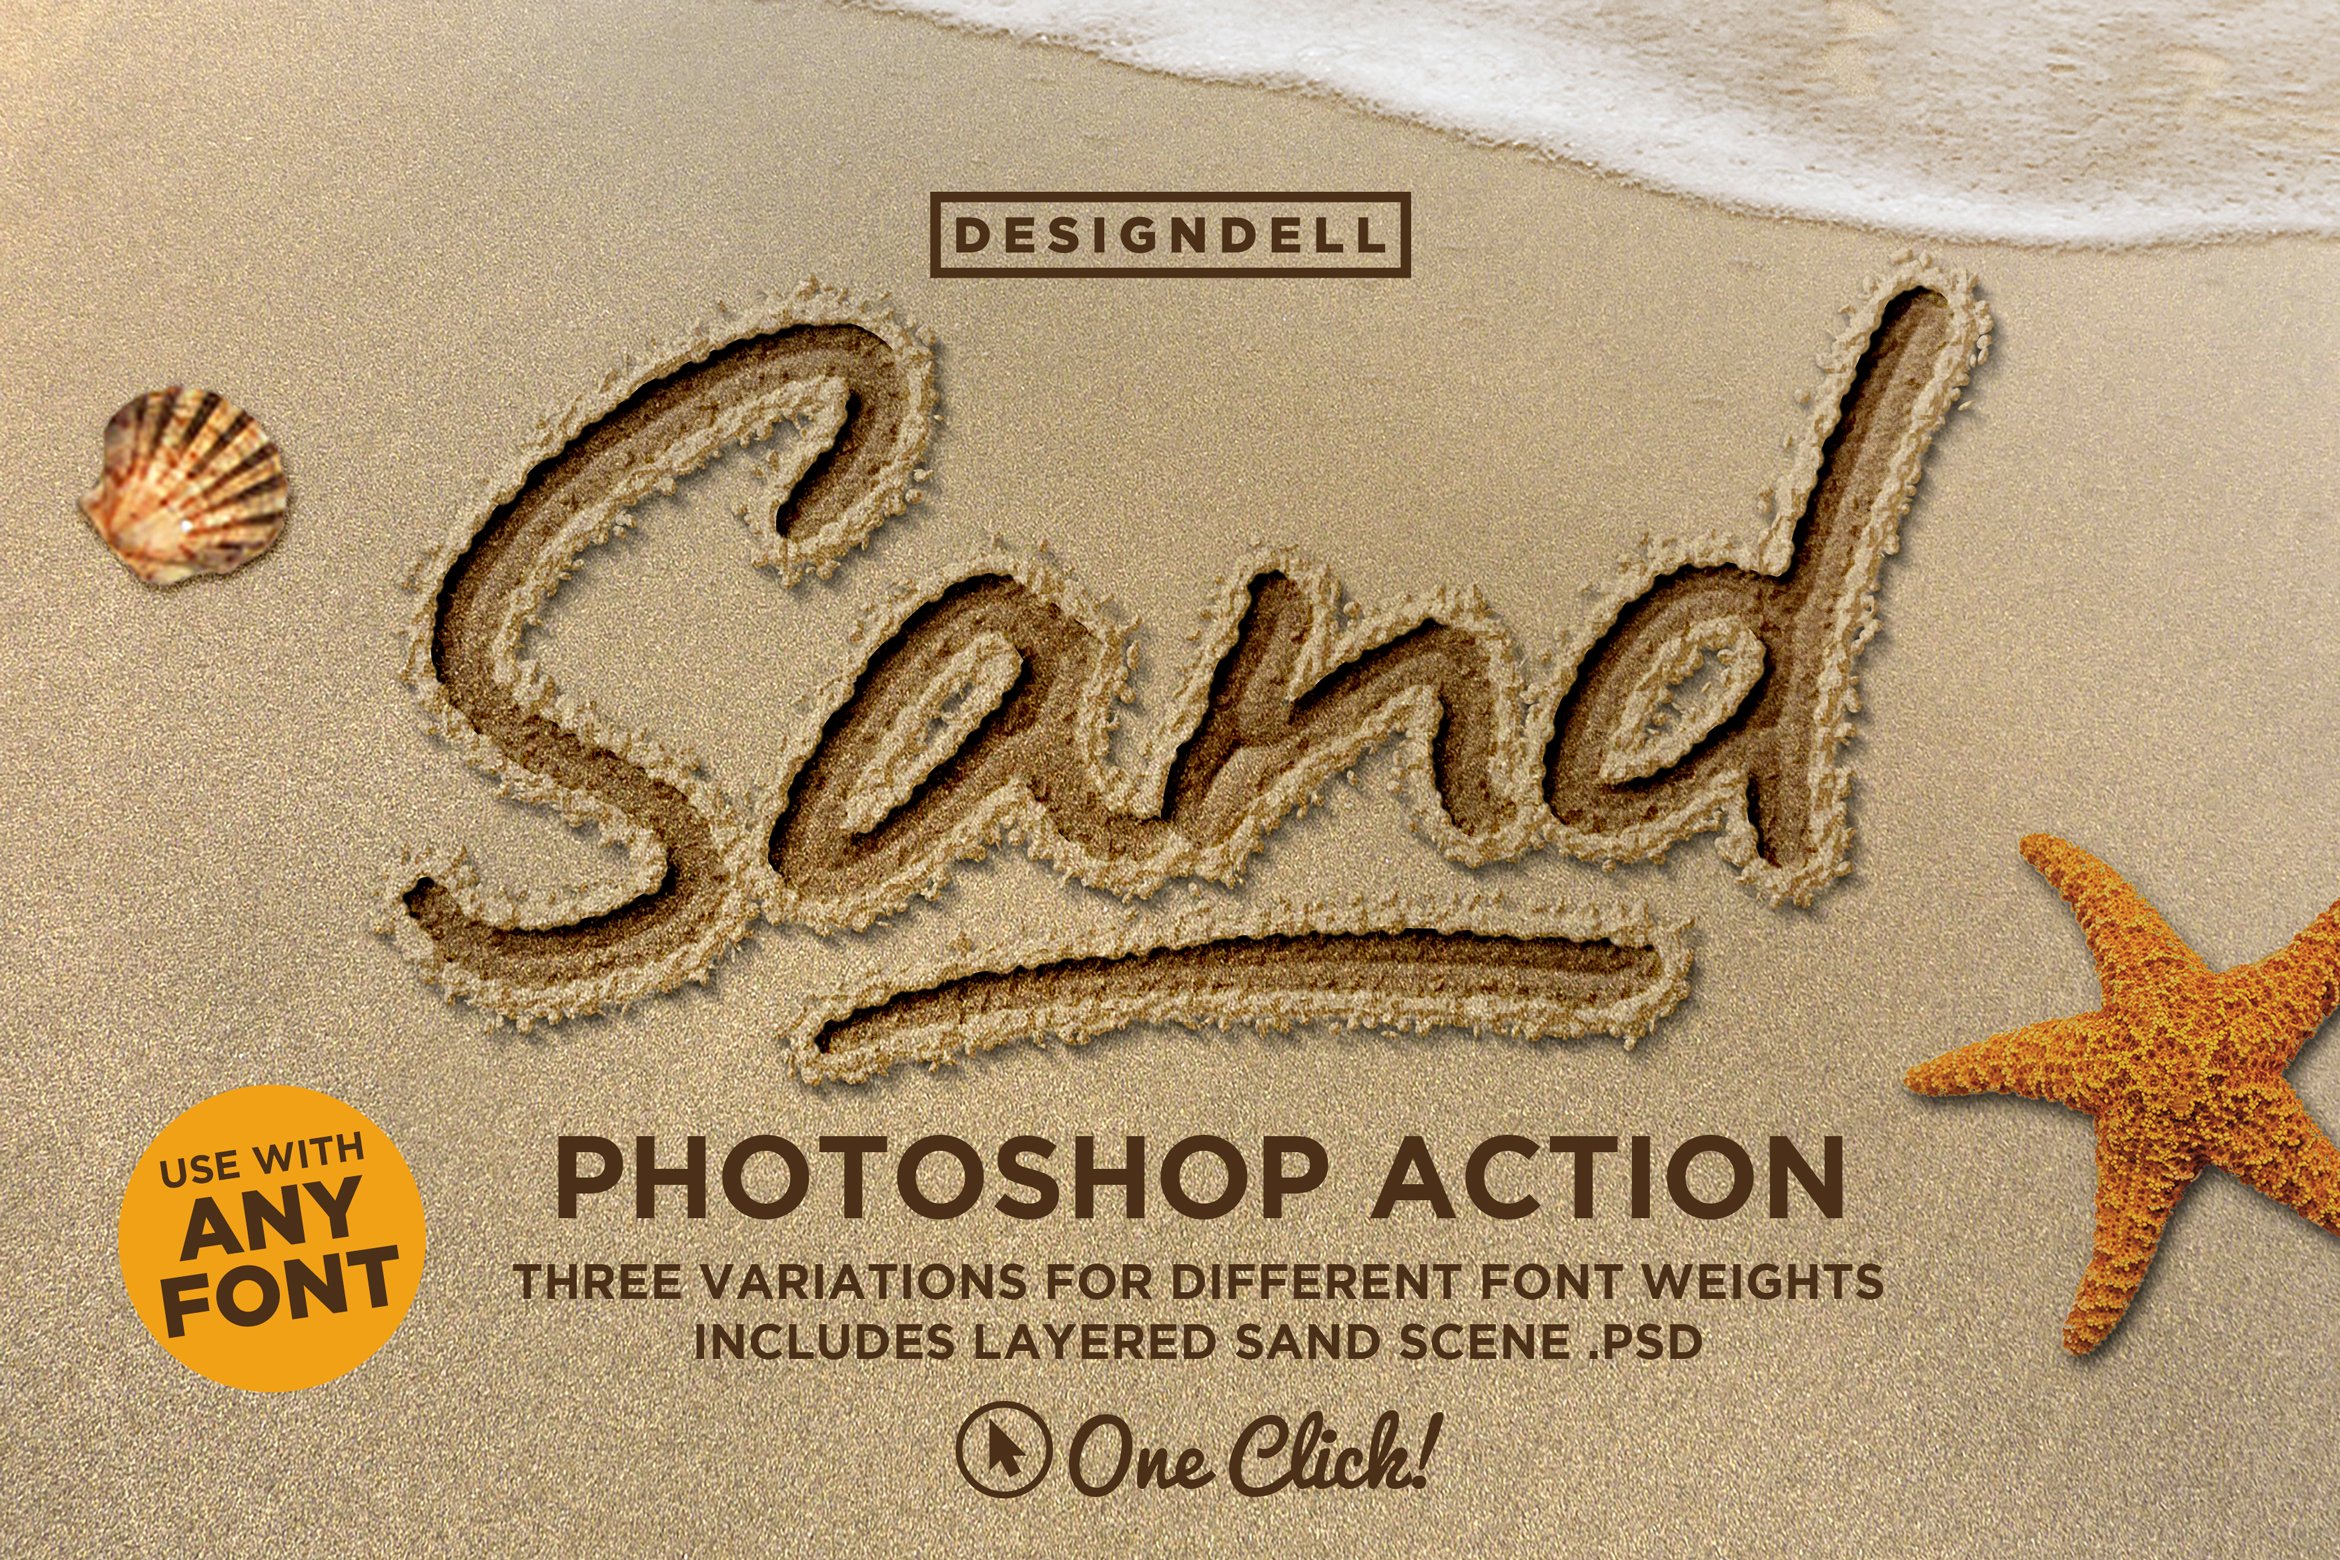 Verniel voorjaar tabak Sand Photoshop Action - Design Cuts